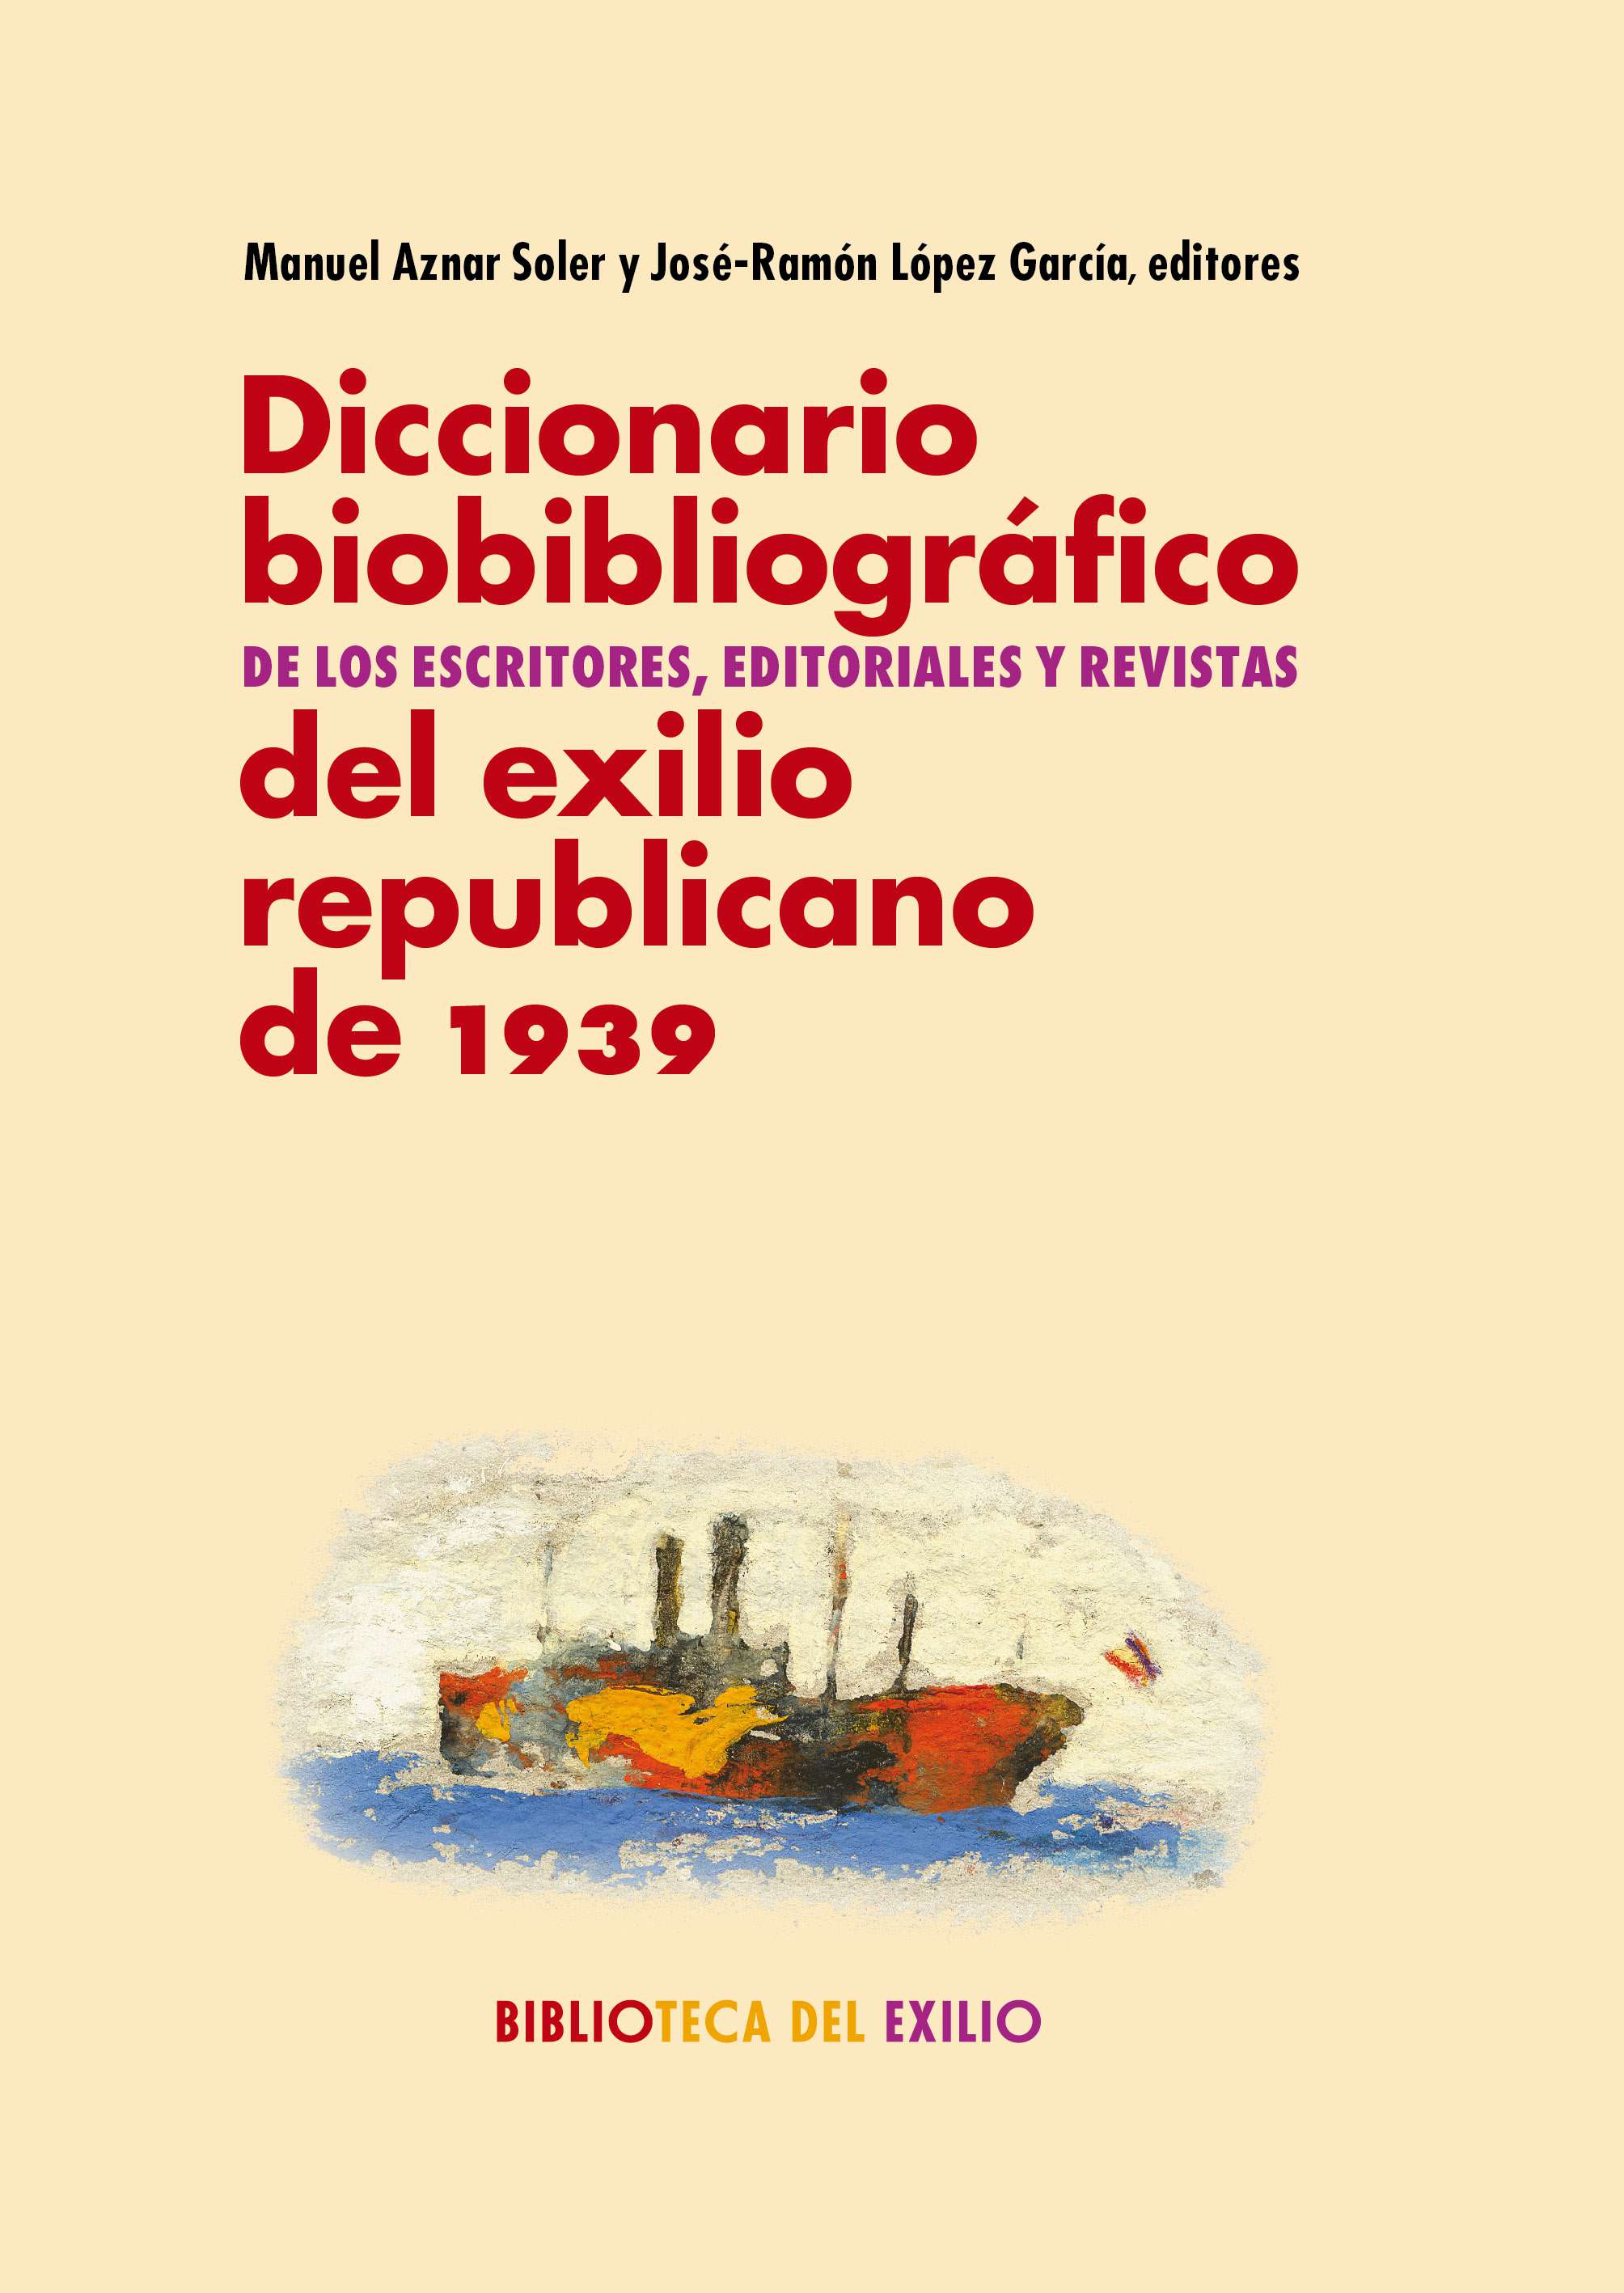 Imagen de portada del libro Diccionario biobibliográfico de los escritores, editoriales y revistas del exilio republicano de 1939